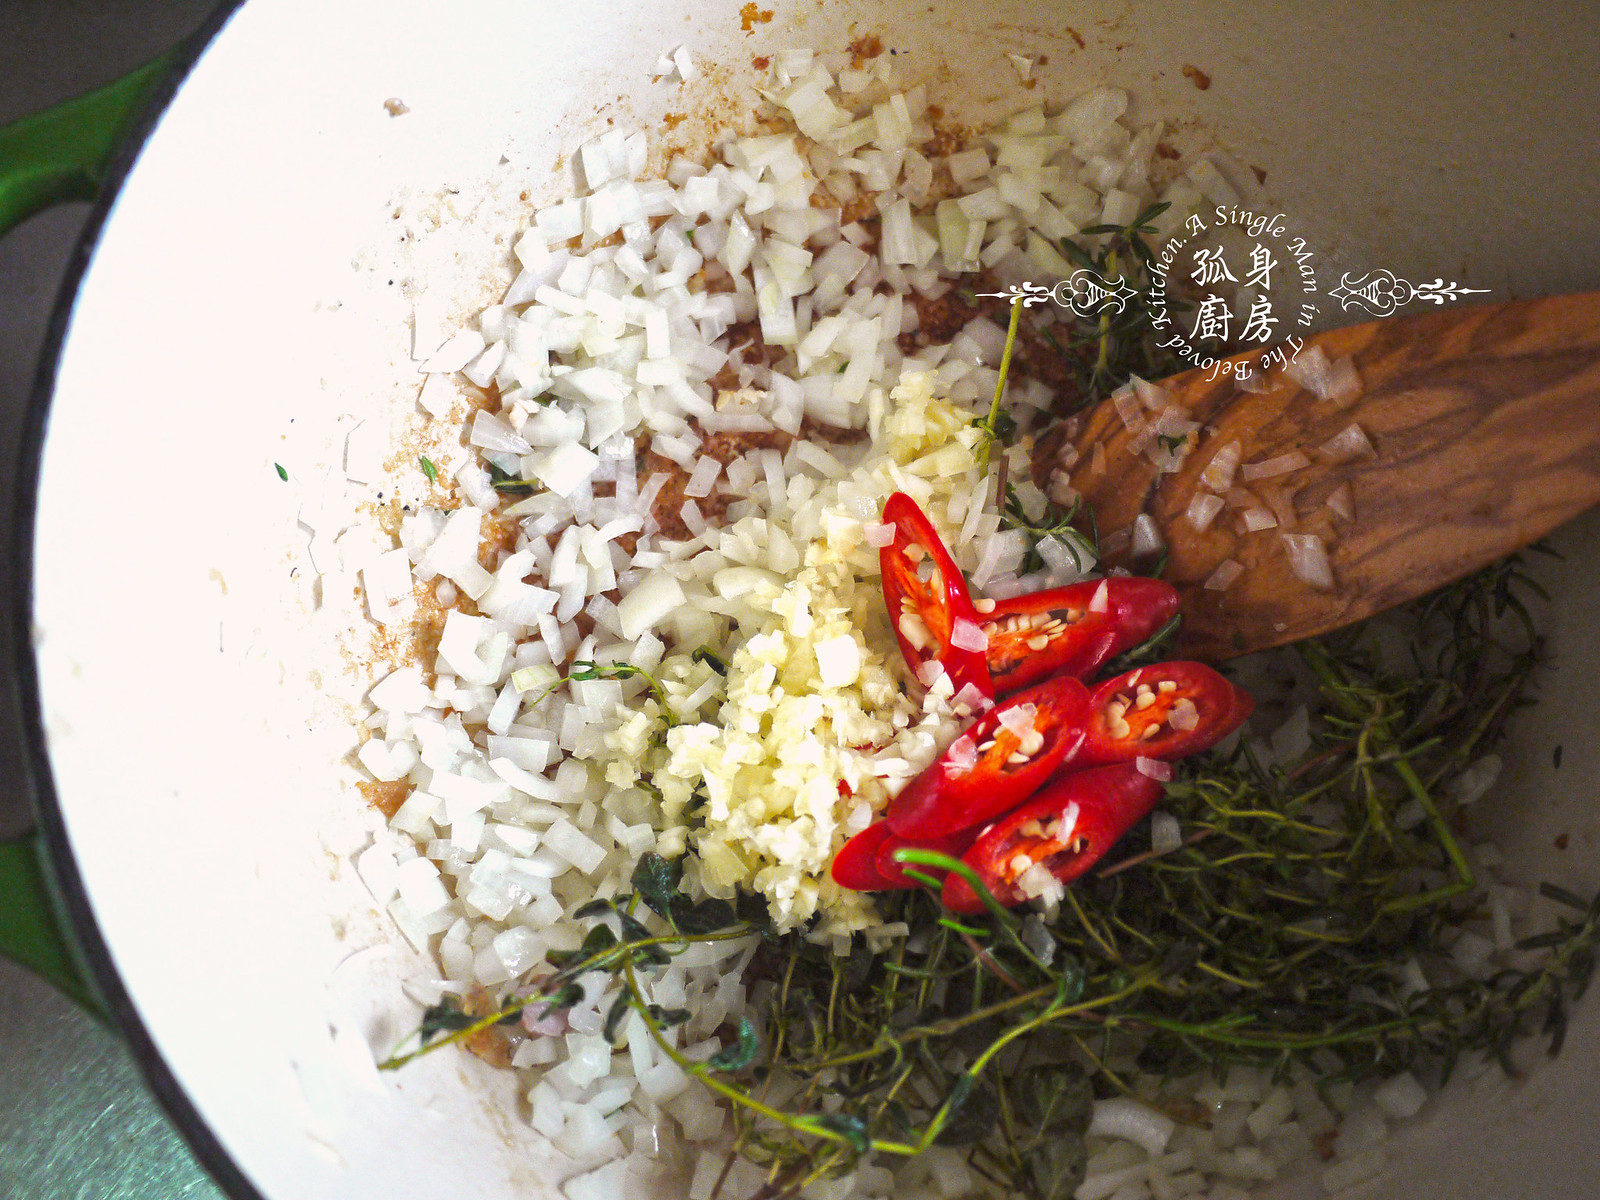 孤身廚房-蕃茄橄欖燴雞肉佐番紅花香米17